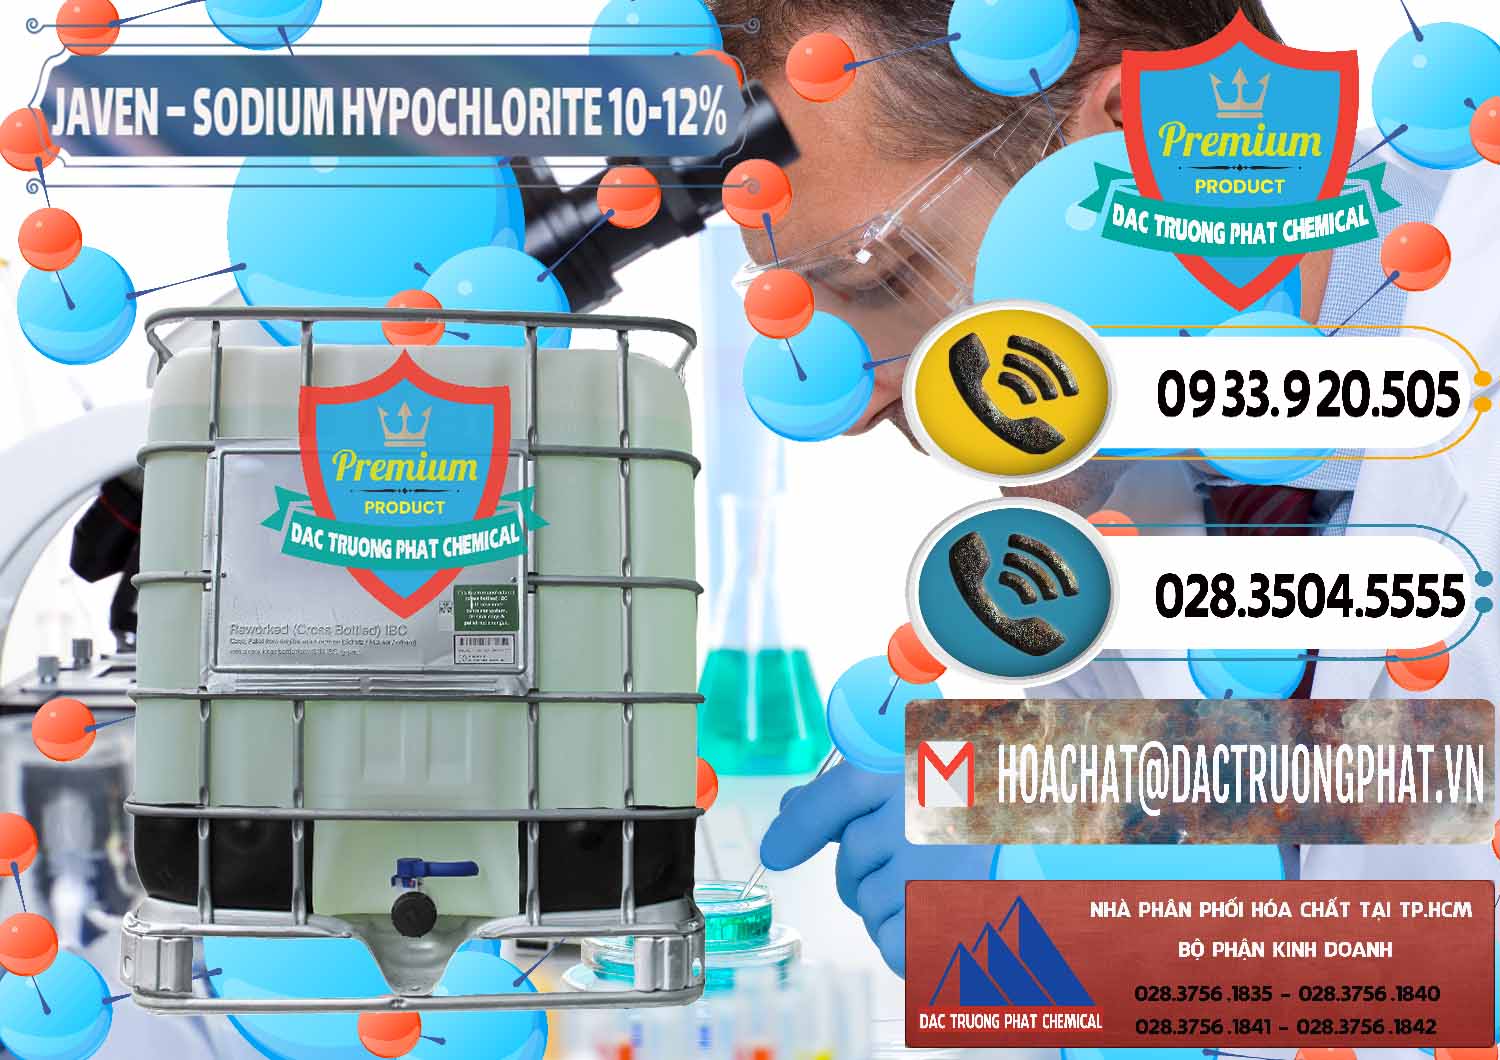 Cty bán - cung ứng Javen - Sodium Hypochlorite 10-12% Việt Nam - 0188 - Nơi cung ứng ( phân phối ) hóa chất tại TP.HCM - hoachatdetnhuom.vn